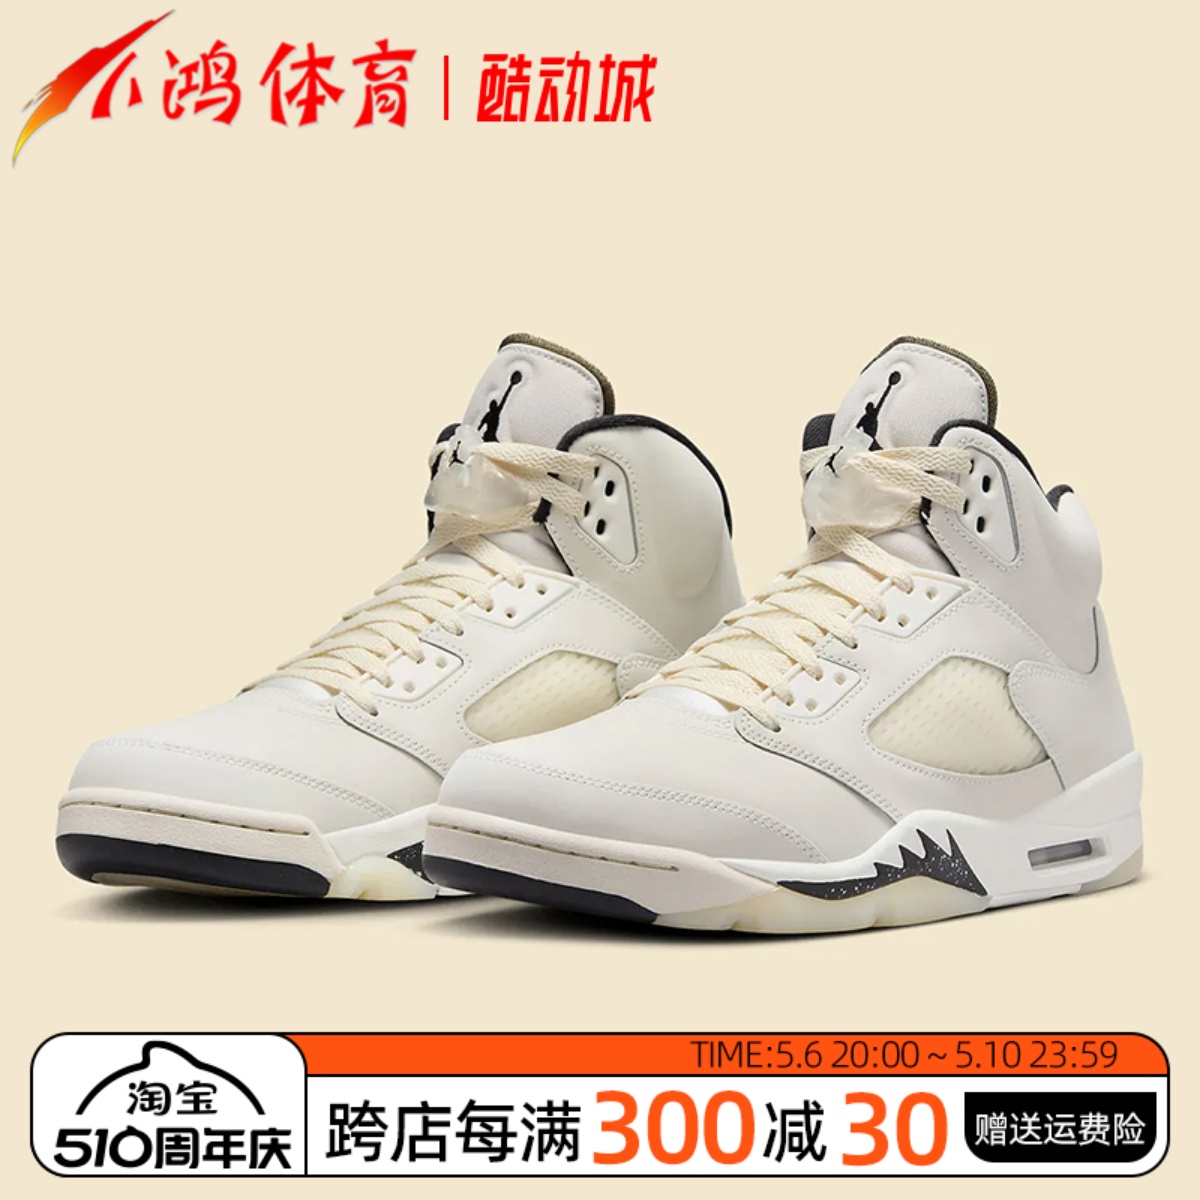 小鸿体育Air Jordan 5 AJ5 米白色 高帮 复古篮球鞋 FN7405-100